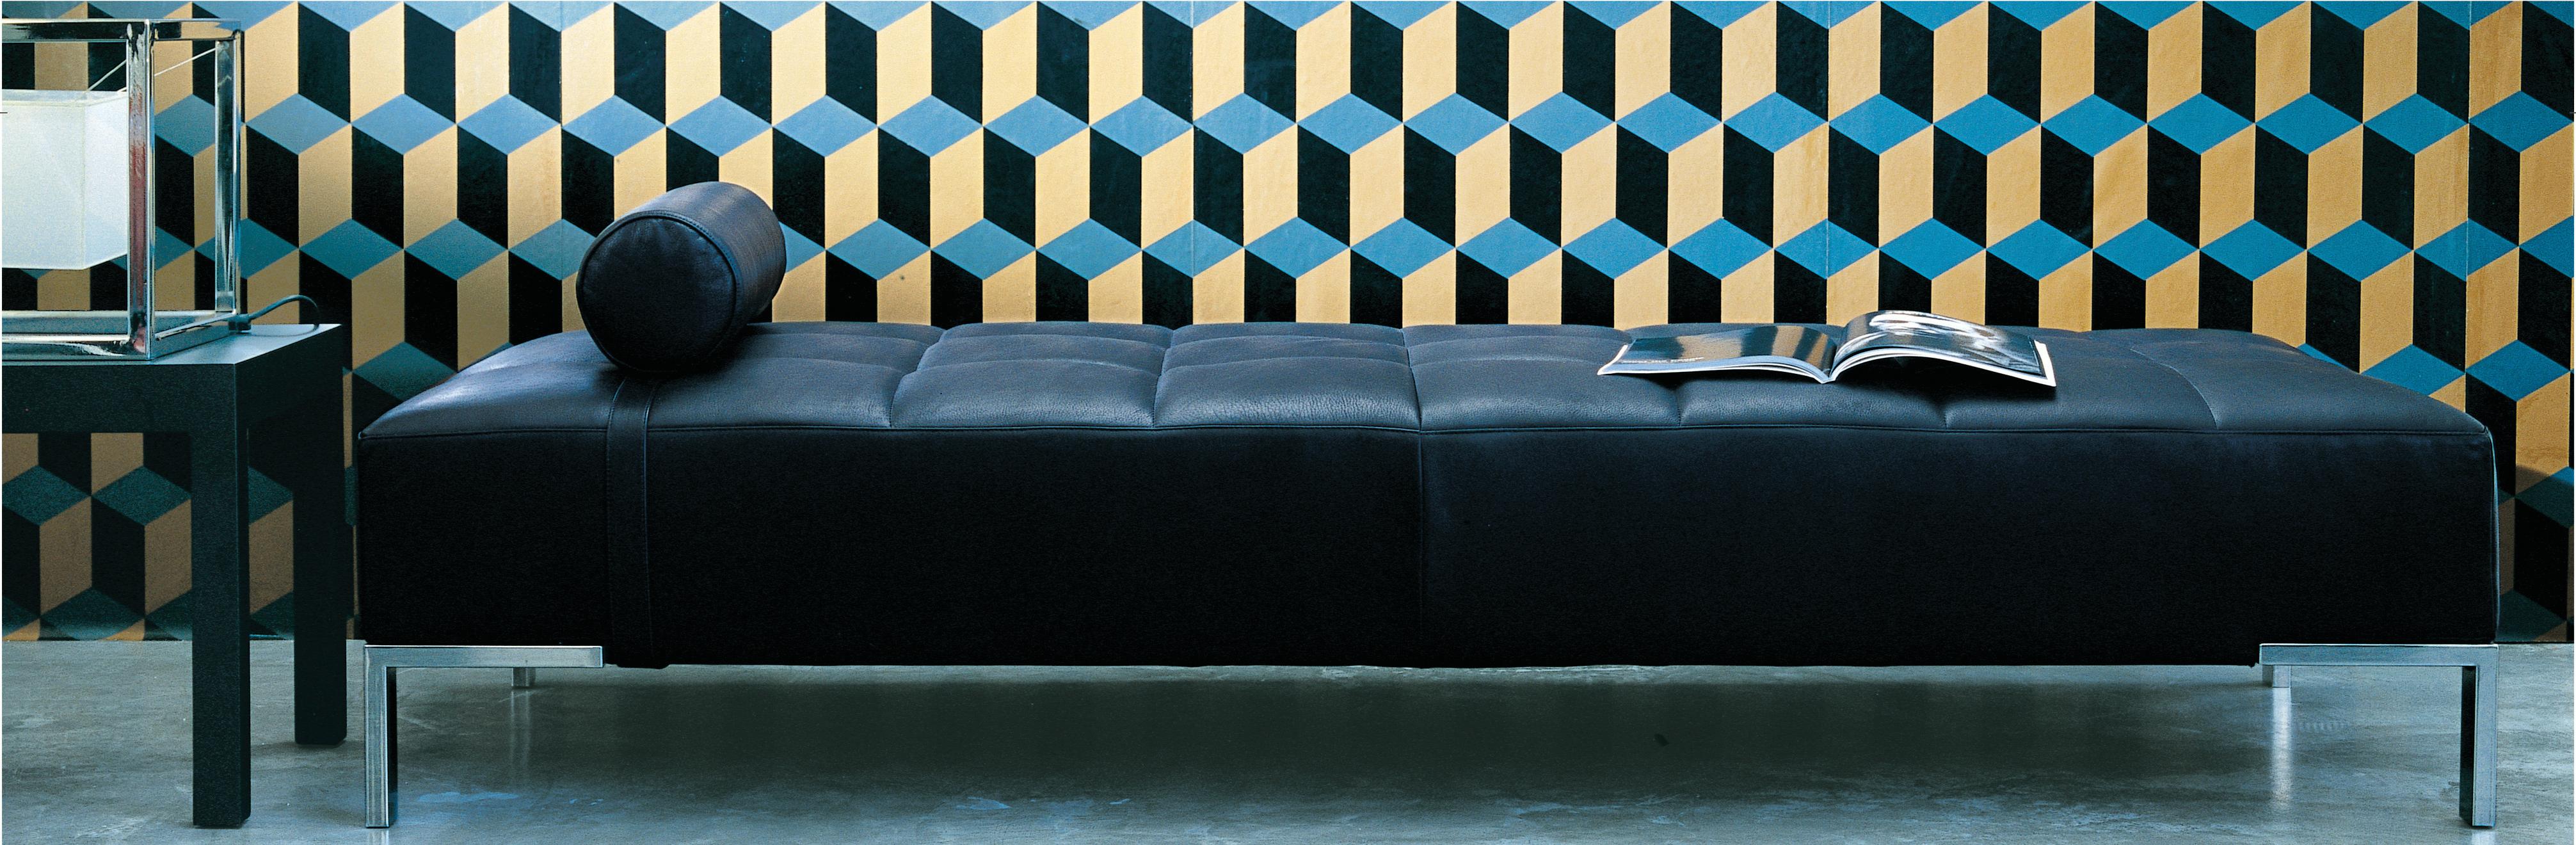 Zanotta Alfa Monobloc Sofa in Teolo Red Fabric by Emaf Progetti For Sale 1